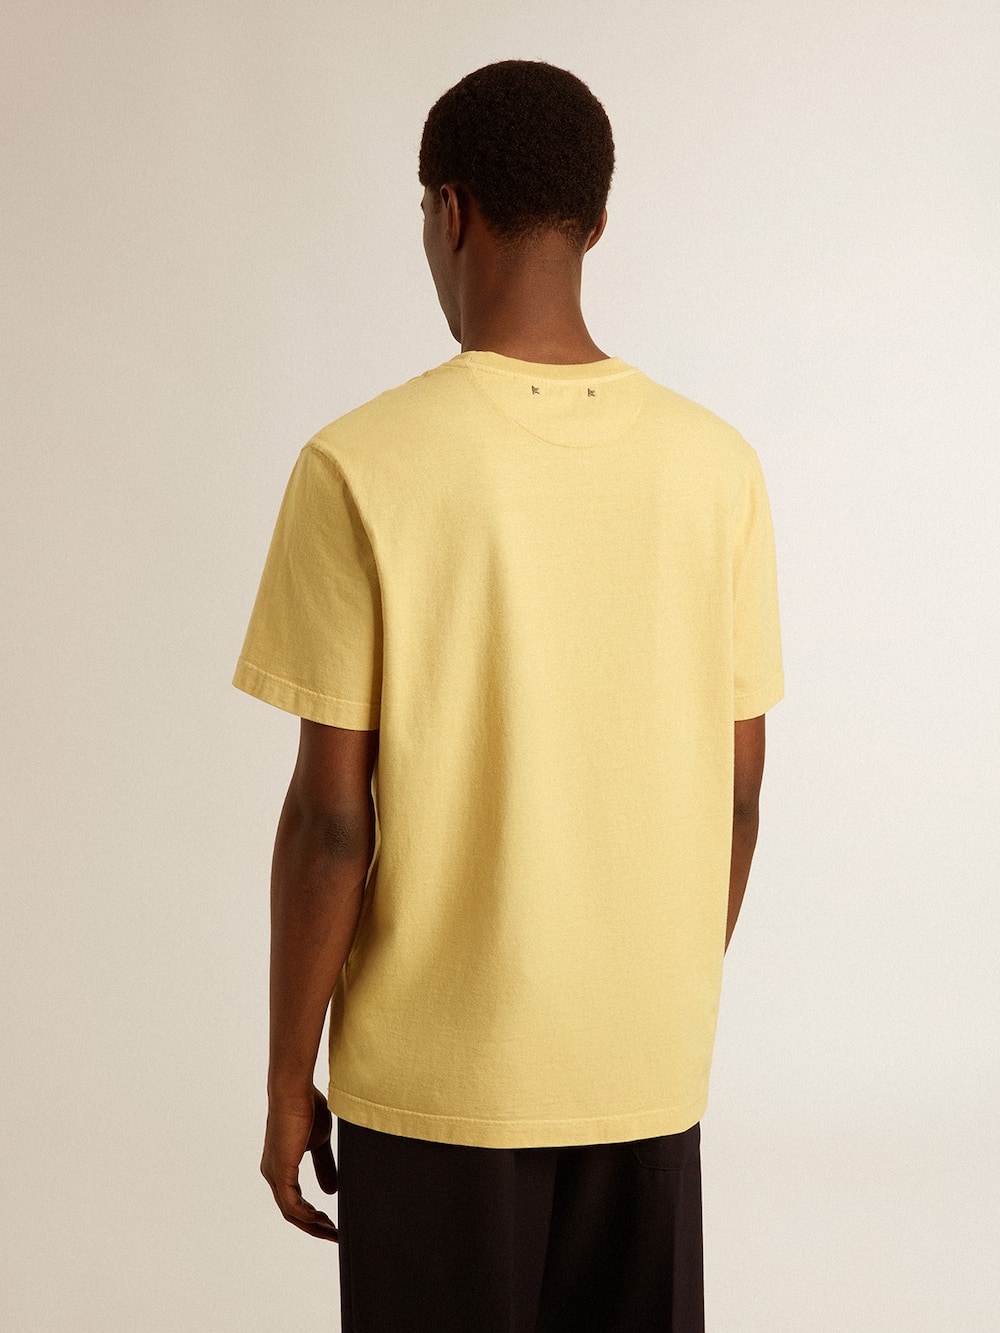 Golden Goose - T-Shirt da uomo in cotone color giallo pallido e scritta sbiadita in 